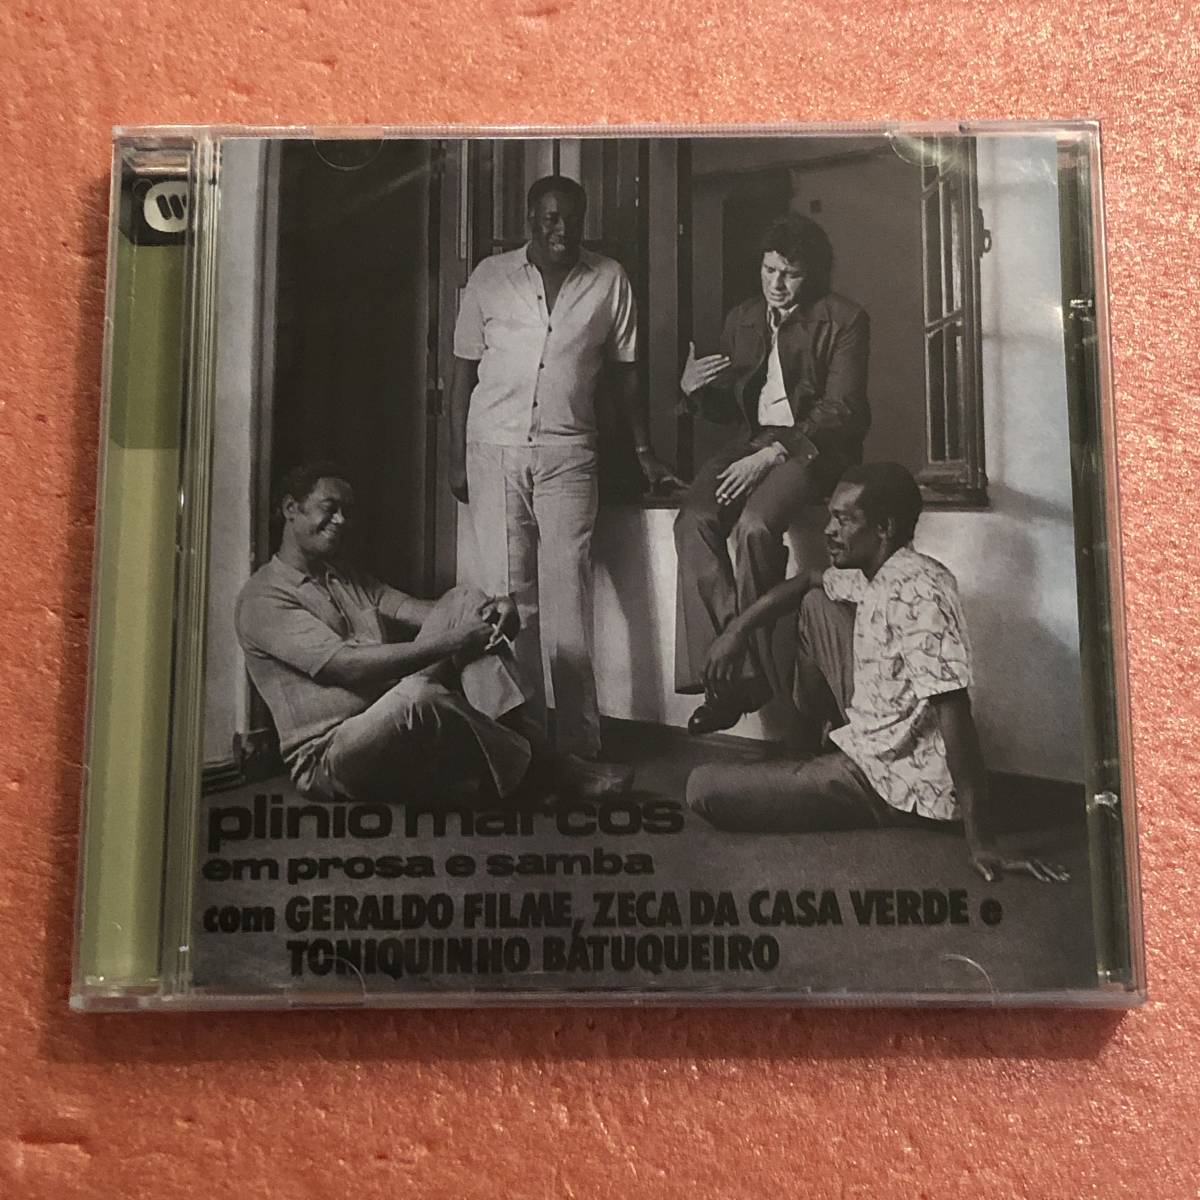  нераспечатанный CD Plinio Marcos com Geraldo Filme Zeca da Casa Verde e Toniquinho Batuqueiro Em Prosa E Sambaplinio maru kos